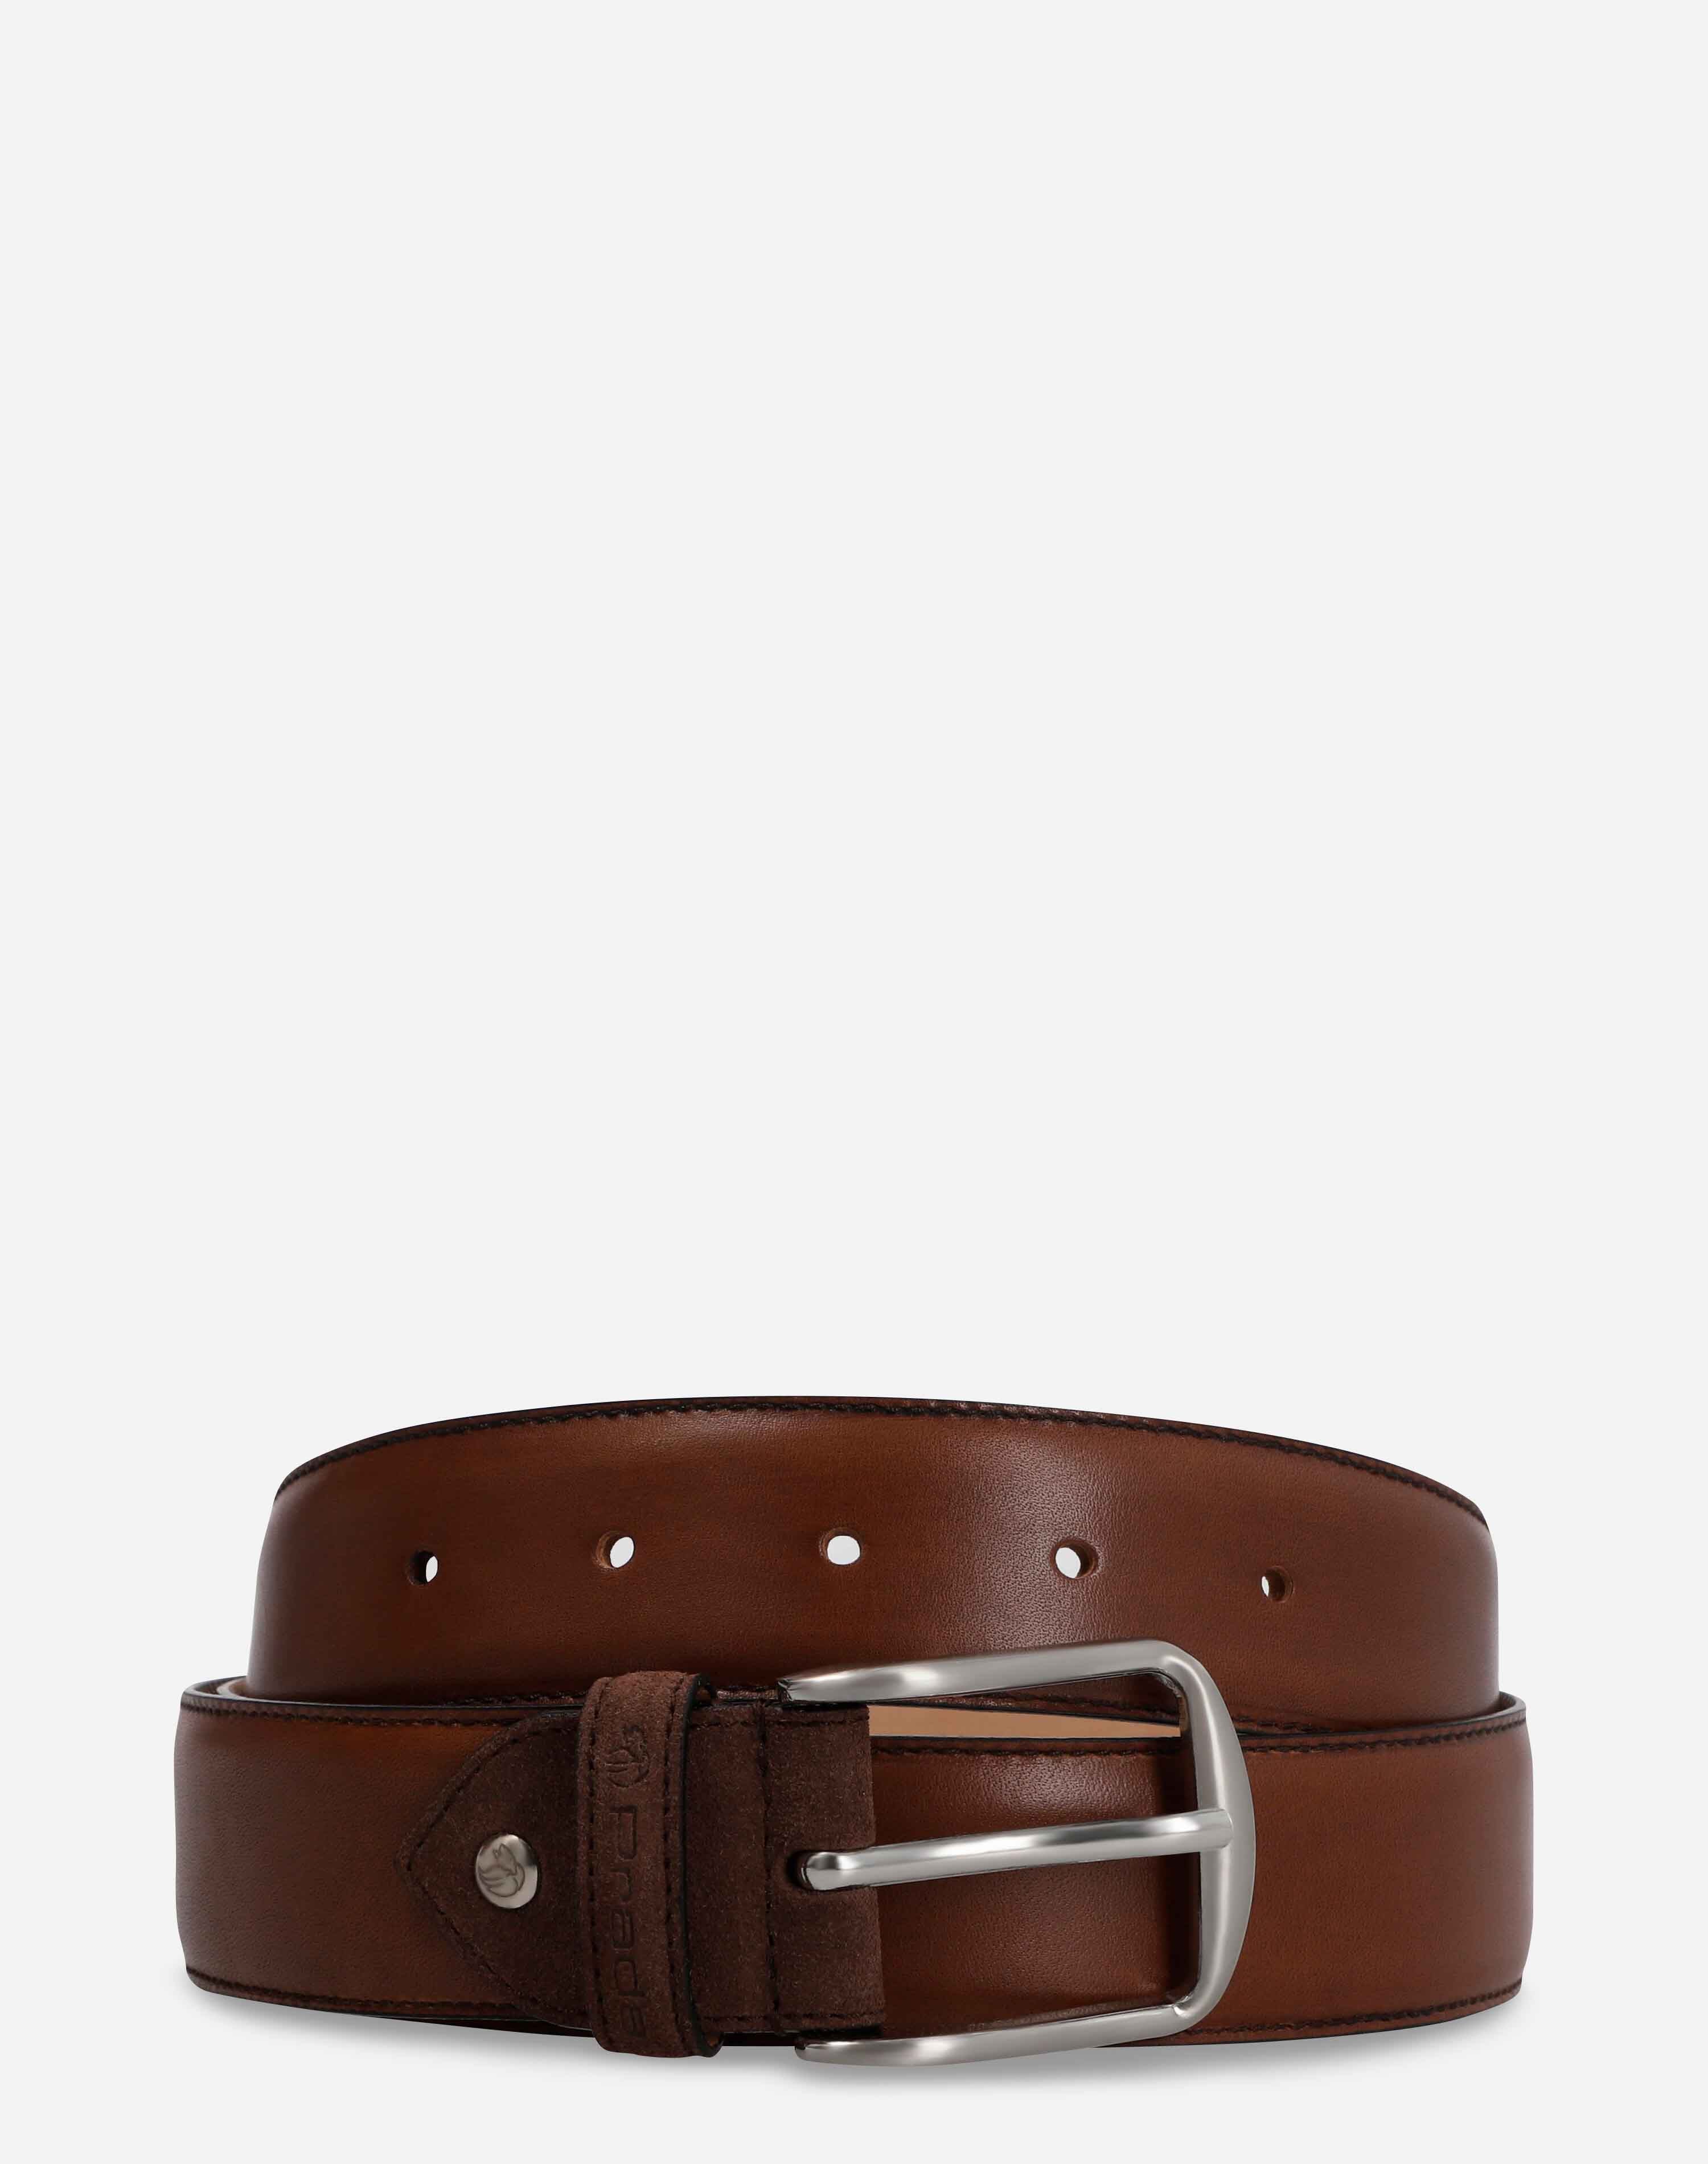 Cinturón en piel napa color marrón